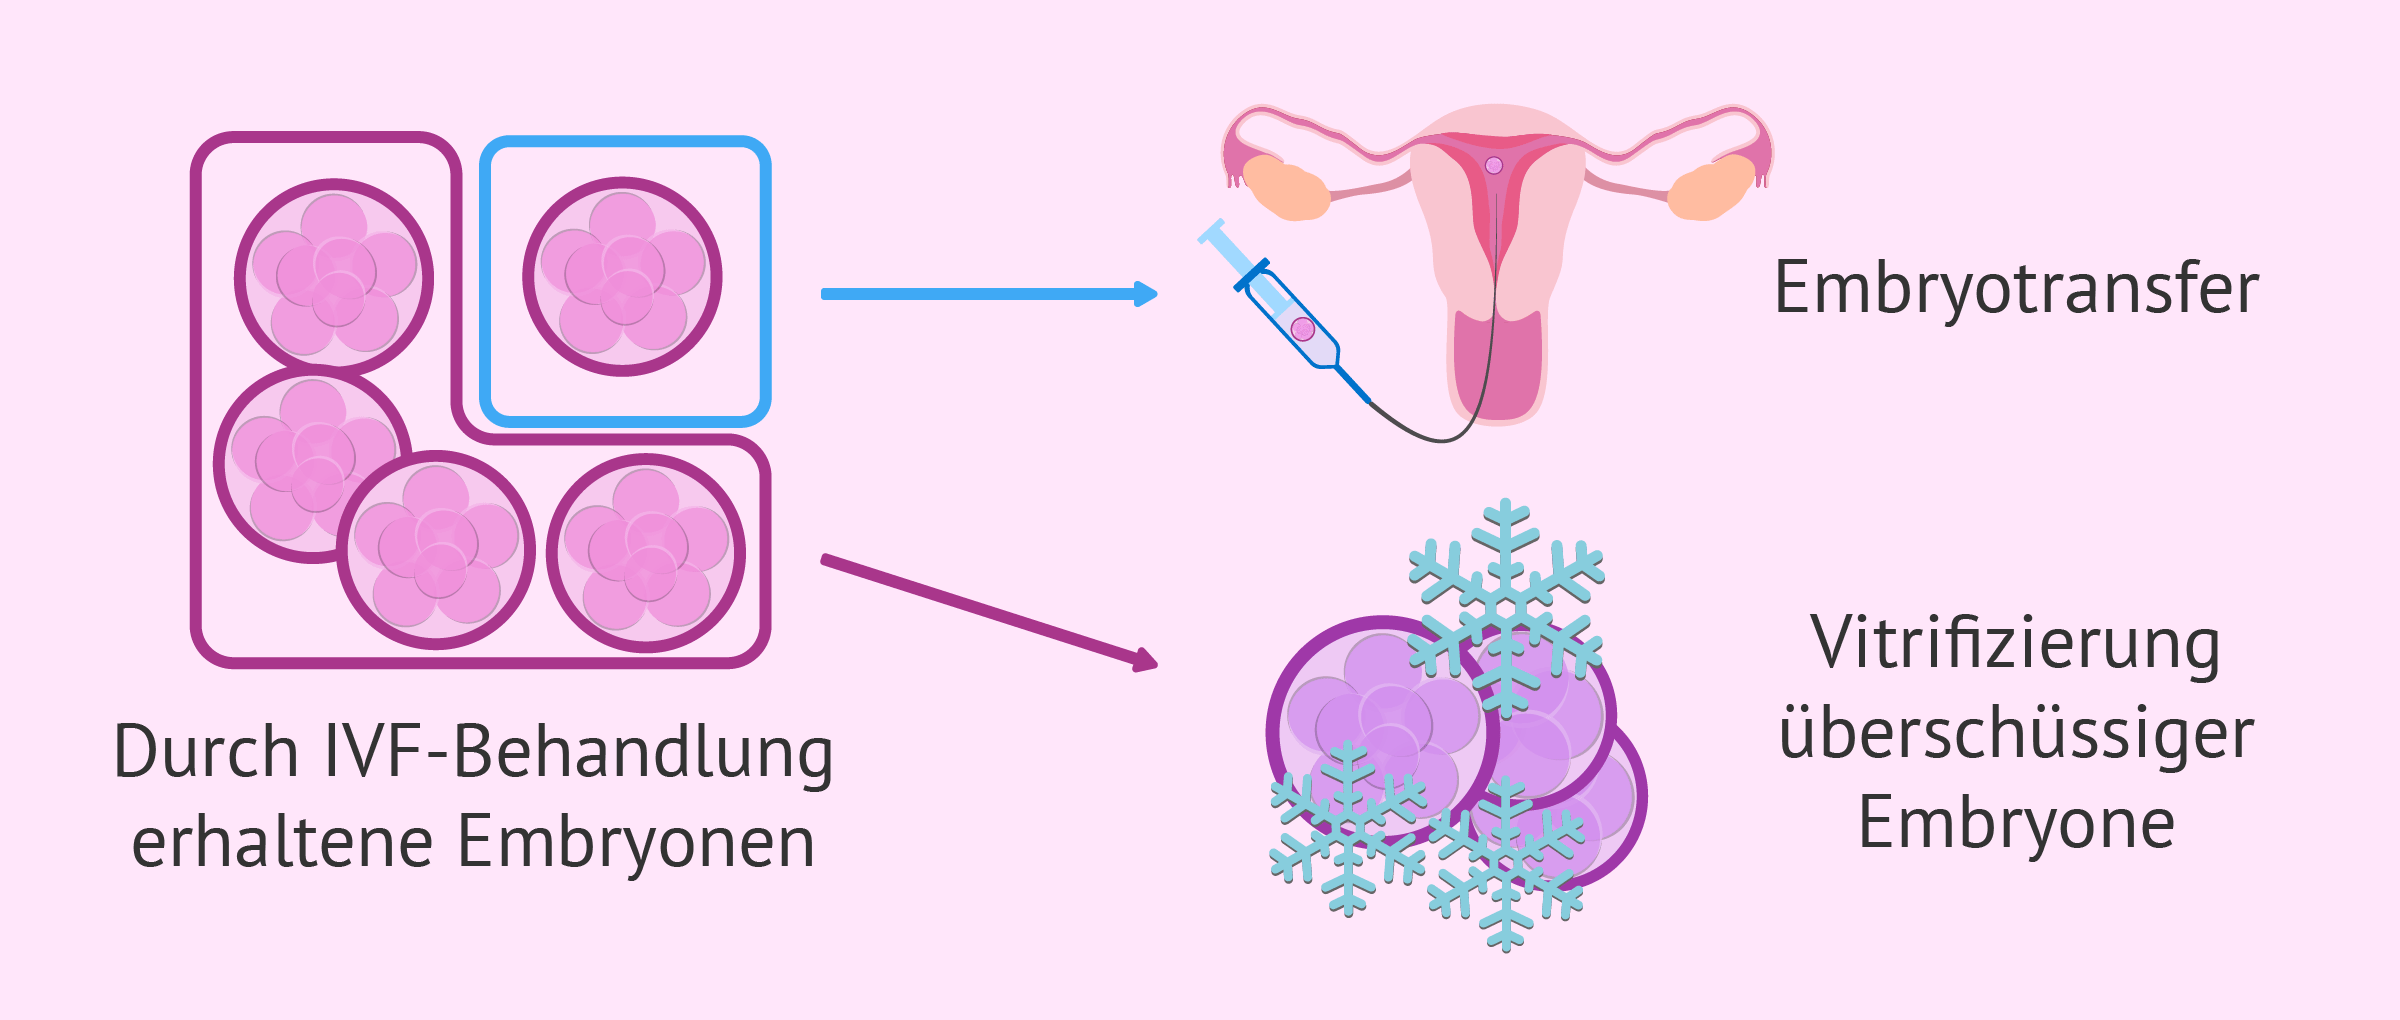 Überschüssige Embryone verglasen